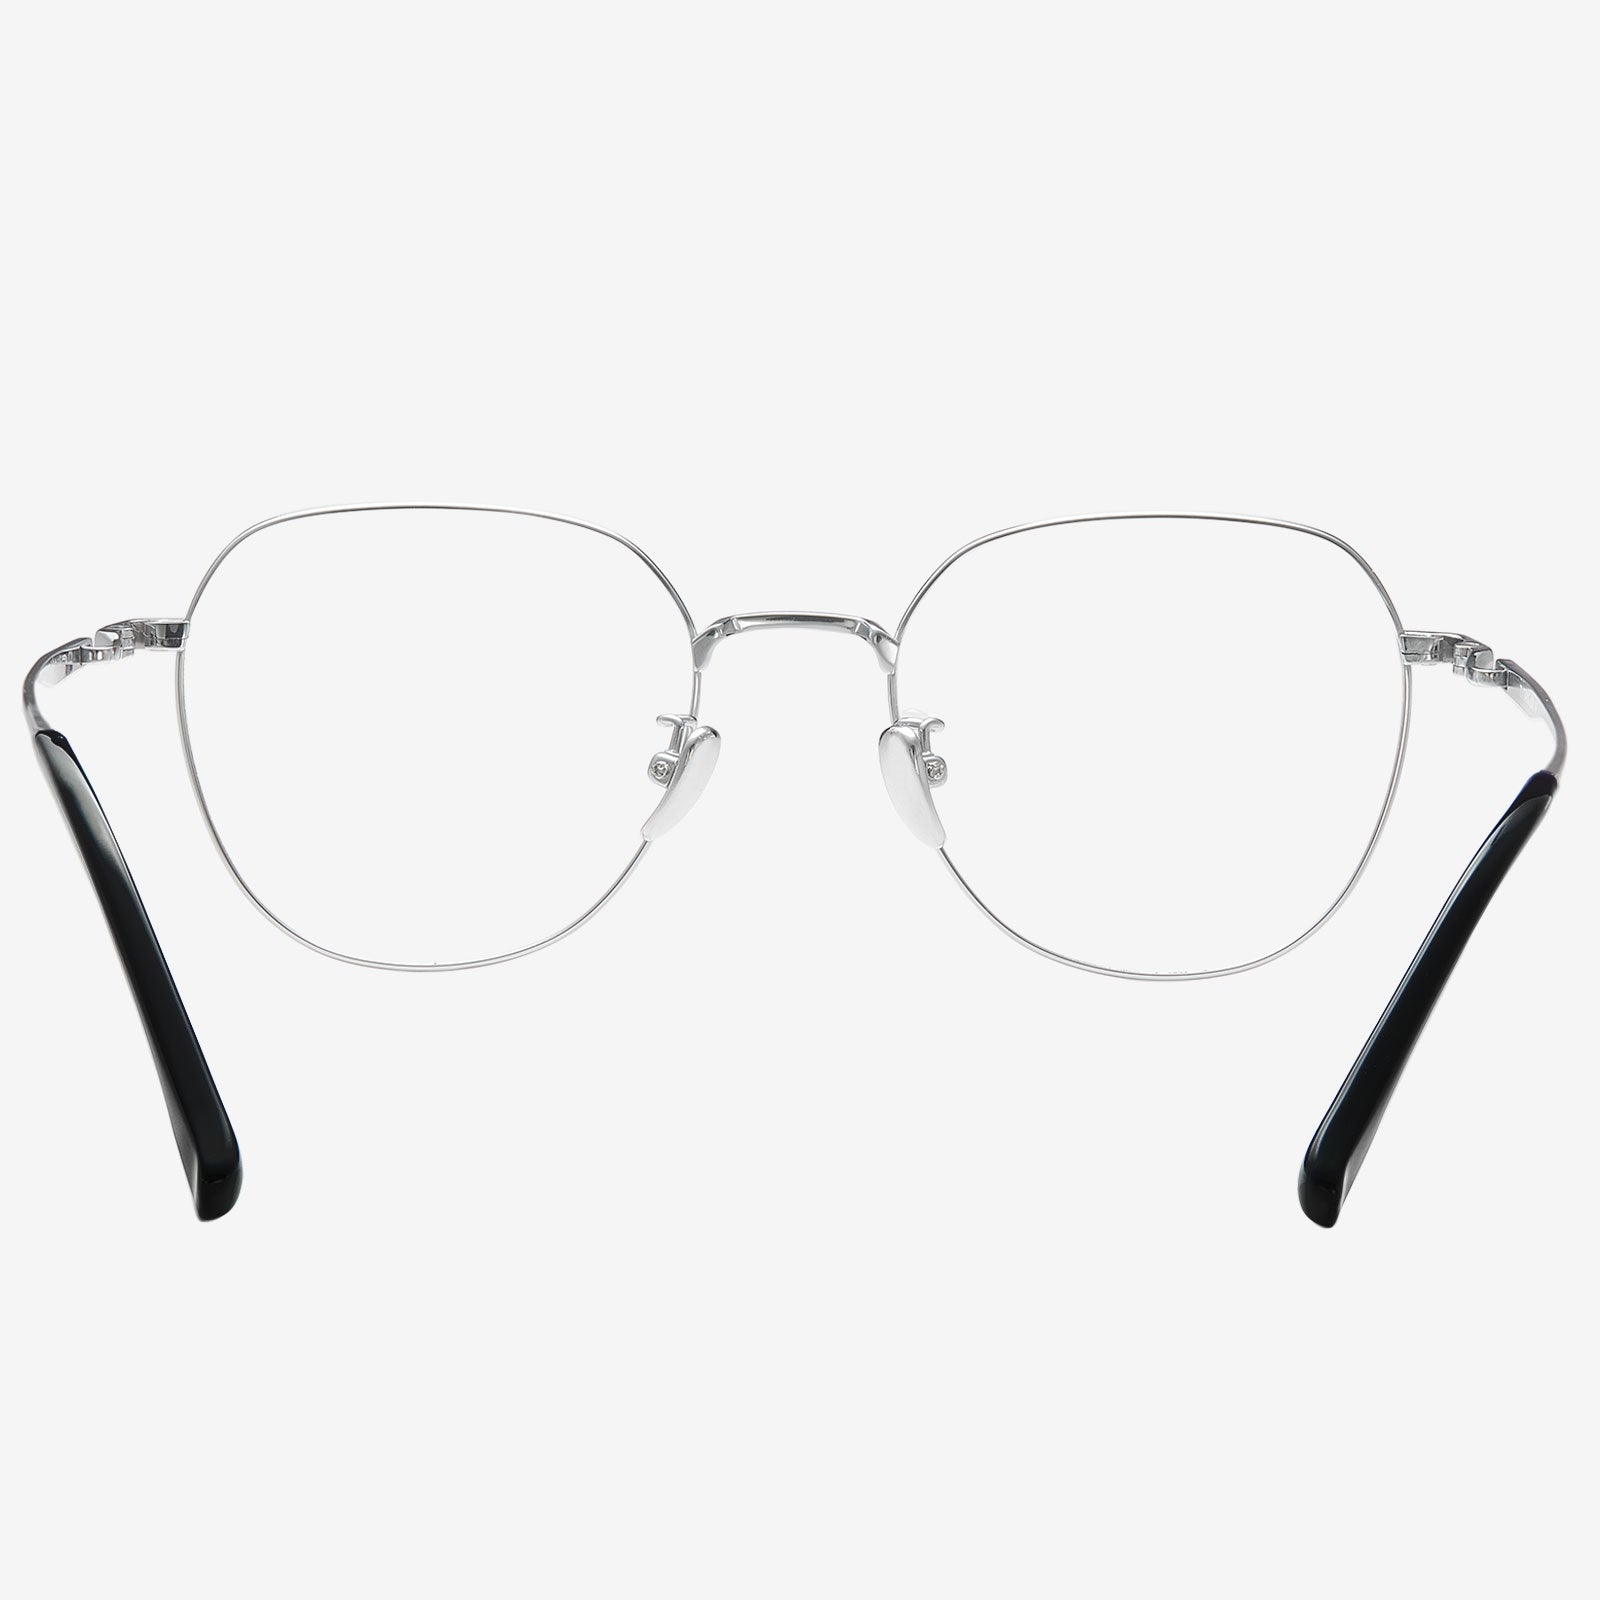 Titanium Glasses Frames | Titanium Glasses | KOALAEYE